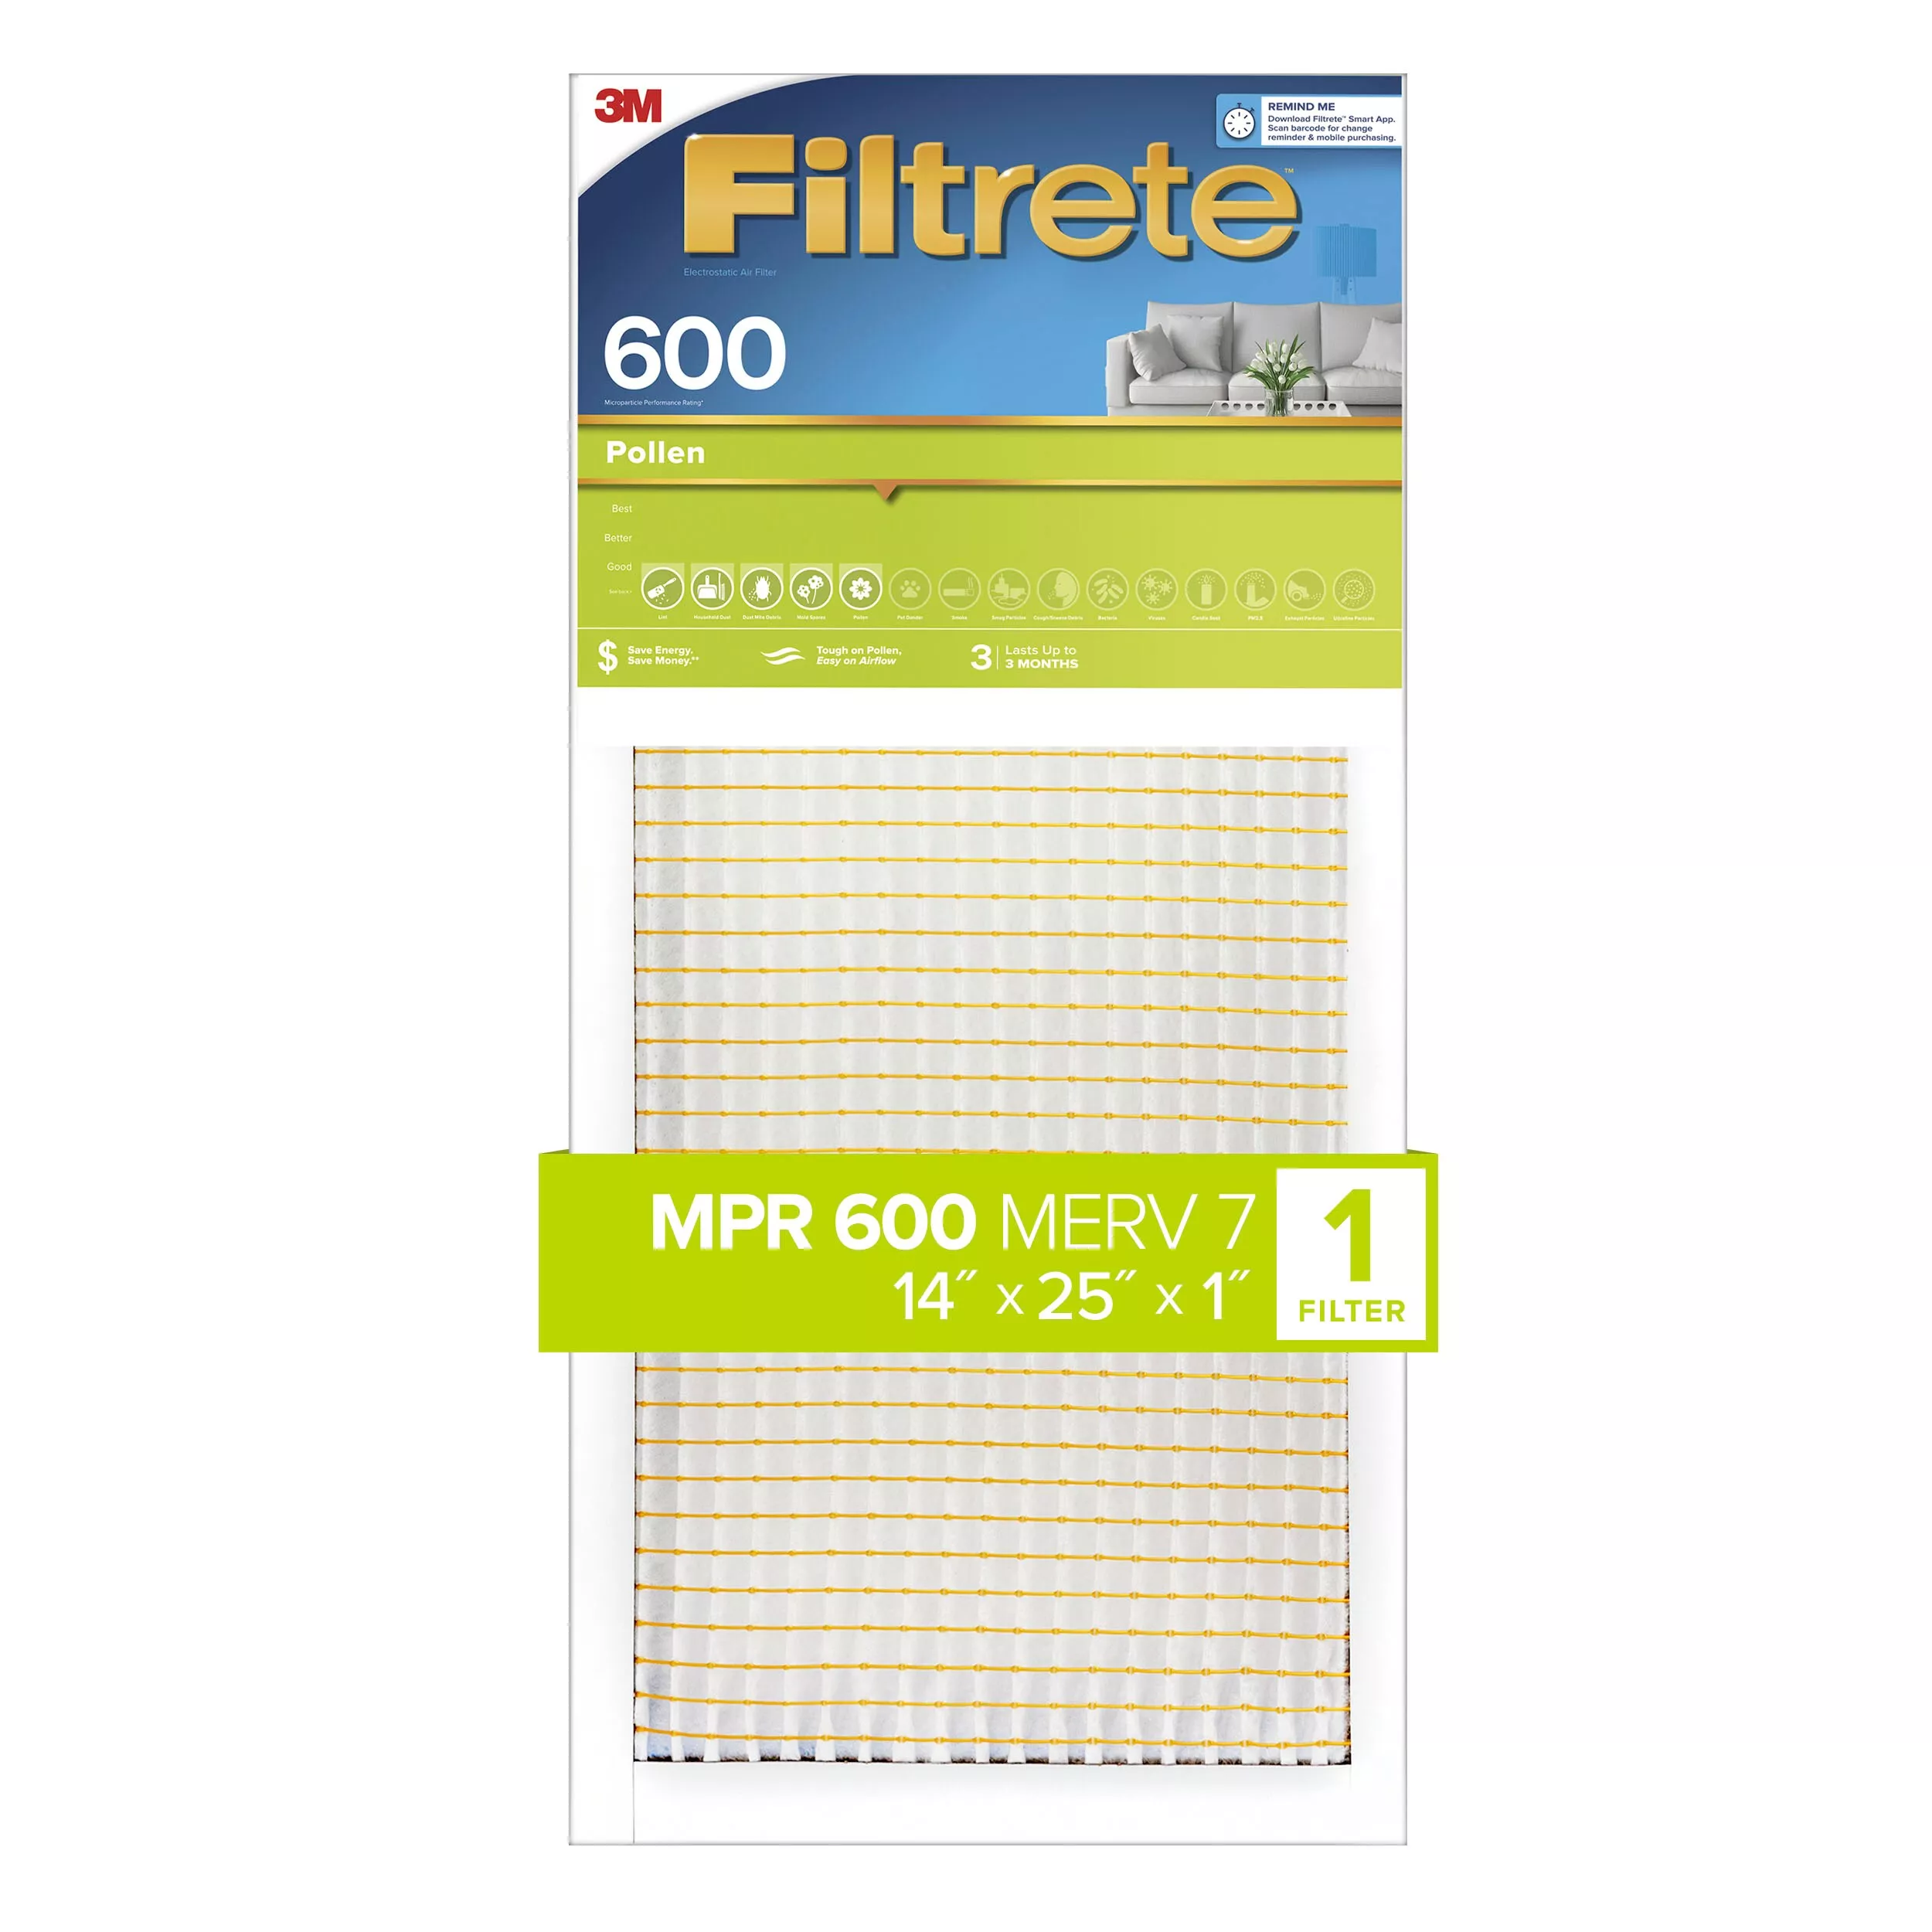 Filtrete™ Pollen Air Filter, 600 MPR, 9834-4, 14 in x 25 in x 1 in (35,5
cm x 63,5 cm x 2,5 cm)